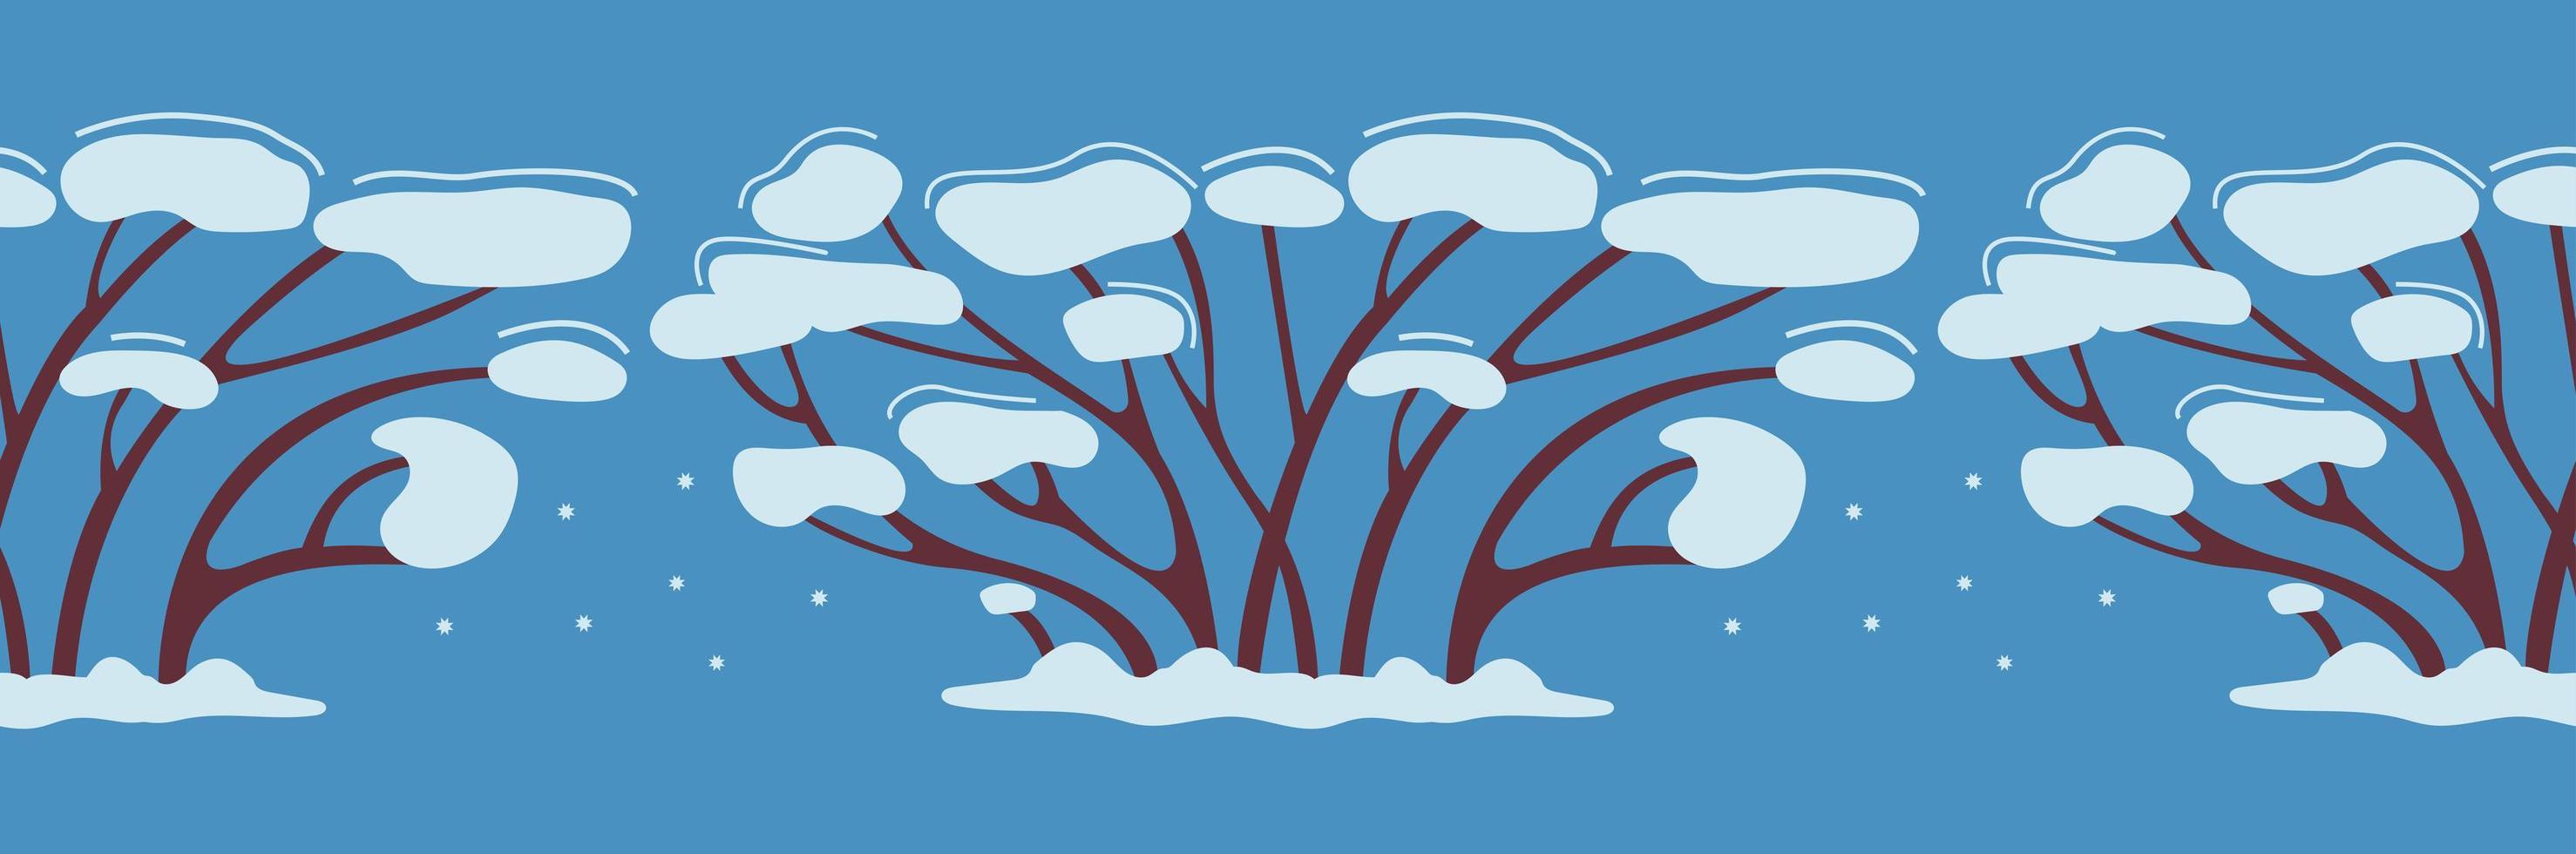 winter naadloze patroon boom of struik in de sneeuw. het groeit in de winter. decor voor nieuwjaarsontwerp. plakband ontwerp. eenvoudige vectorillustratie in vlakke stijl op blauwe achtergrond vector